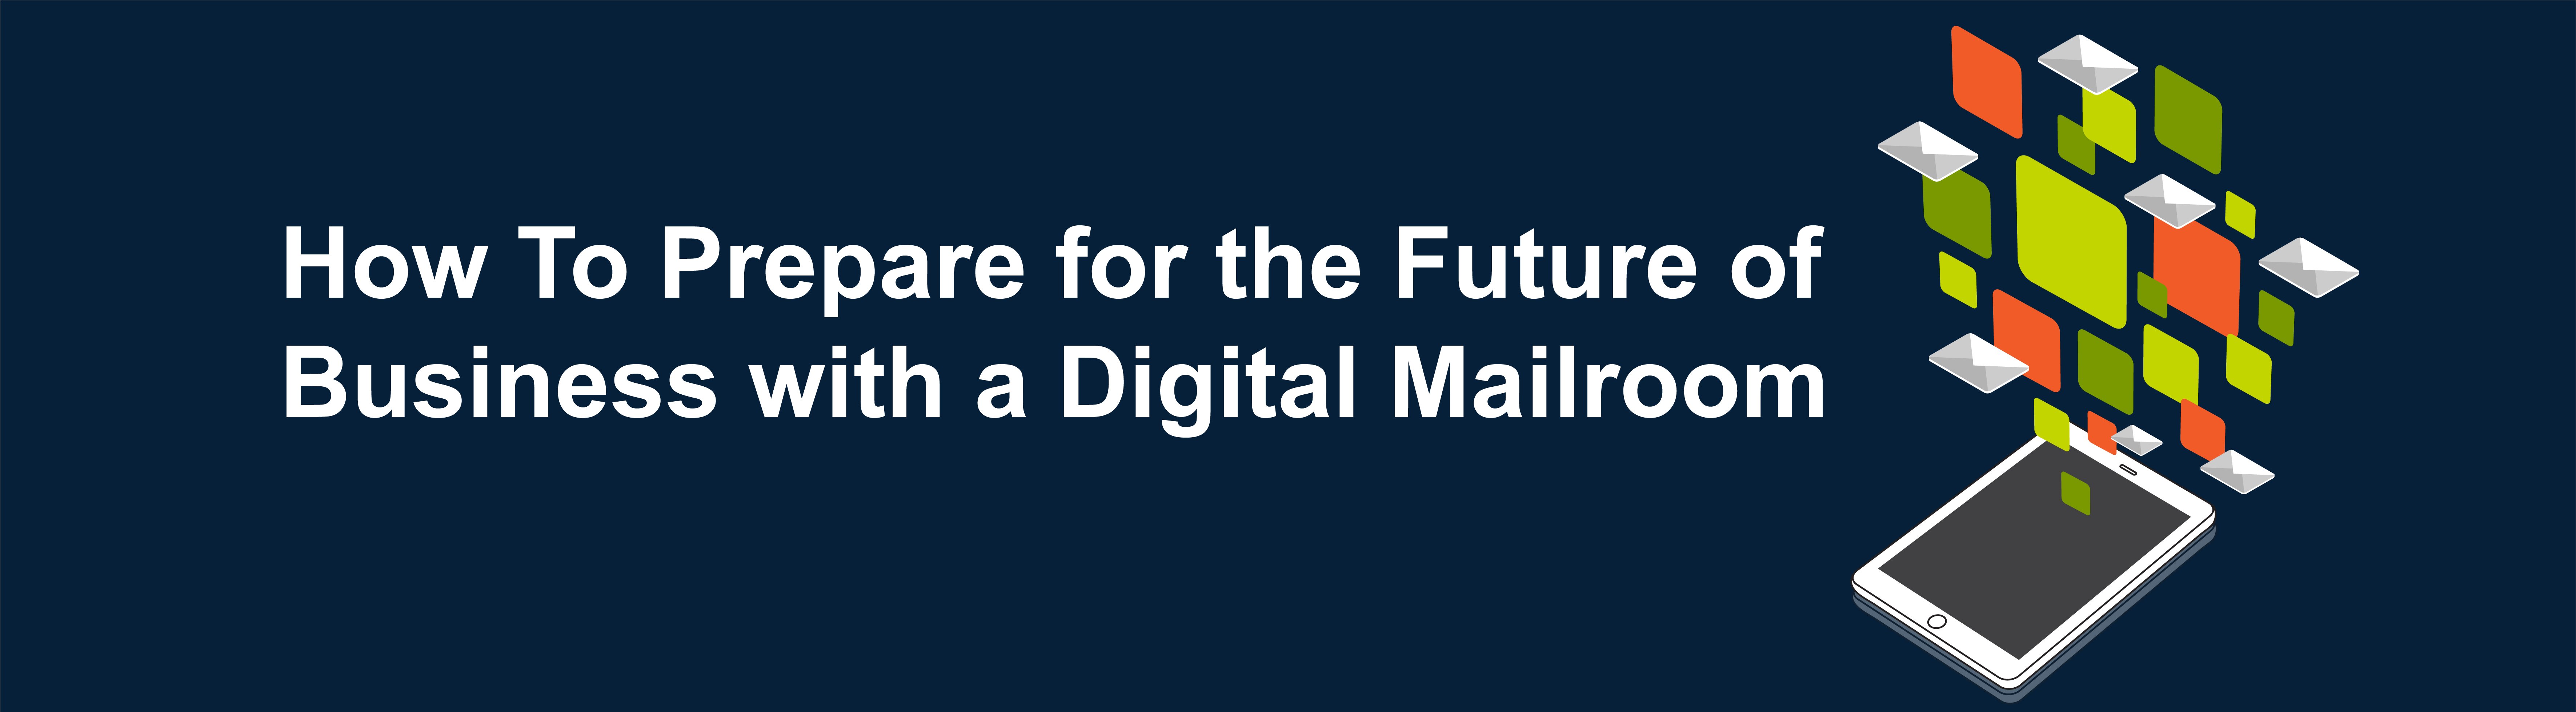 Digital Mailroom Banner-5